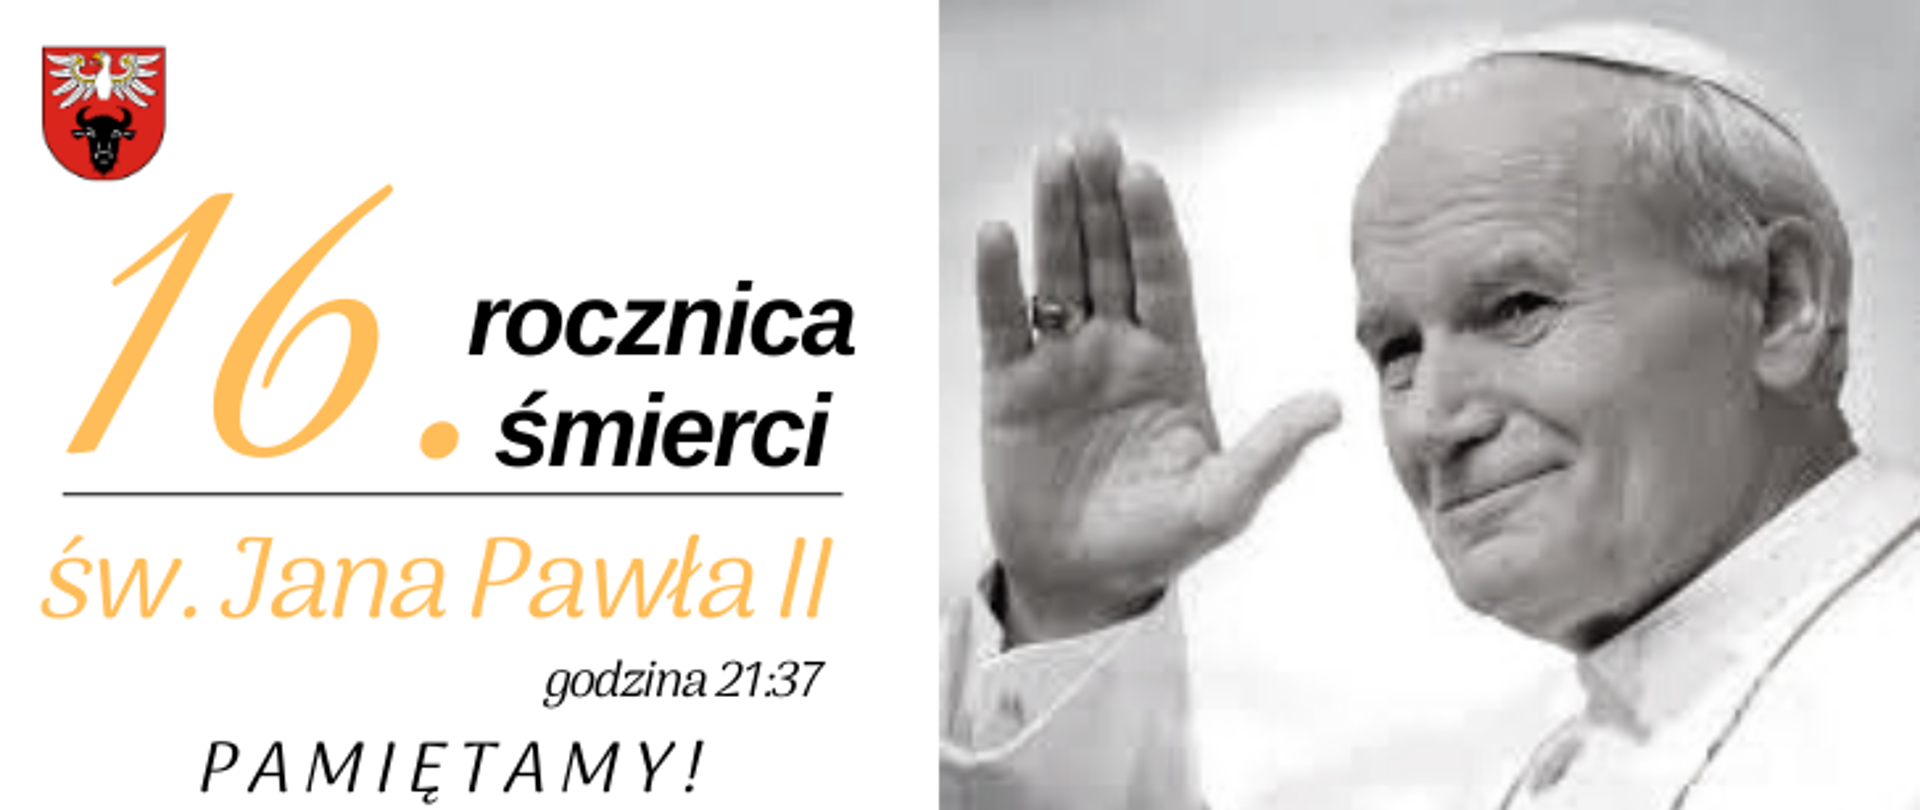 na zdjęciu znajduje się logo powiatu zambrowskiego, zdjęcie biało-czarne Jana Pawła II oraz napis "16. rocznica śmierci św. Jana Pawła II godzina 21:37 PAMIĘTAMY!"